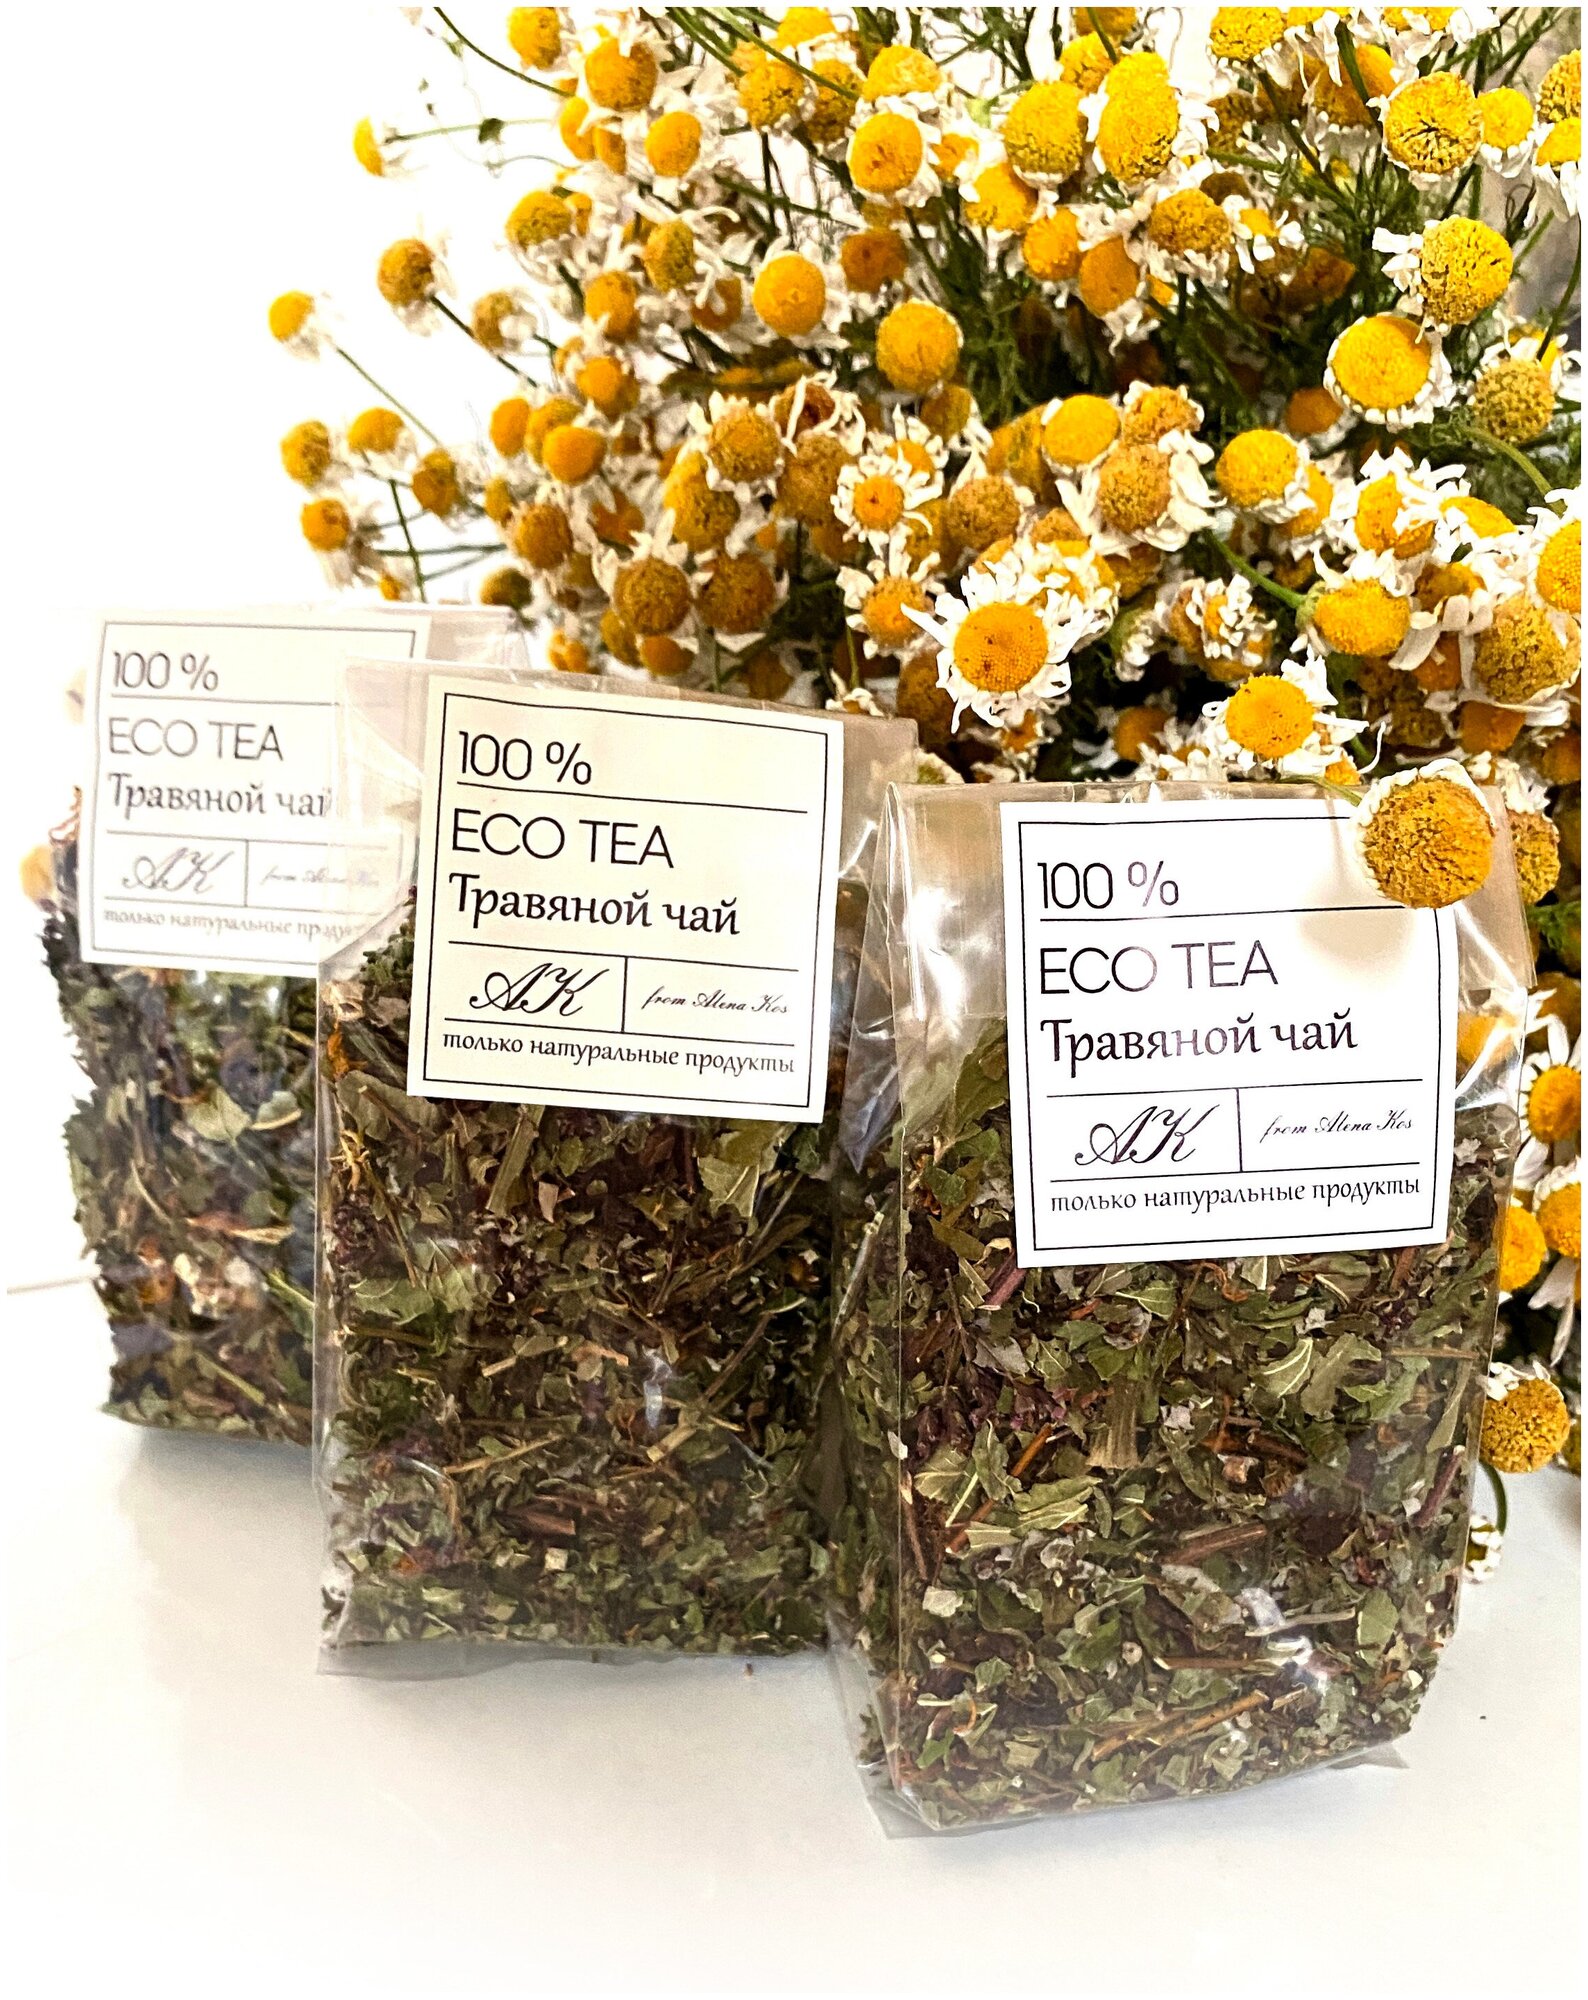 Травяной чай "Бодрость" натуральный травяной чай горный травяной чай ECO TEA